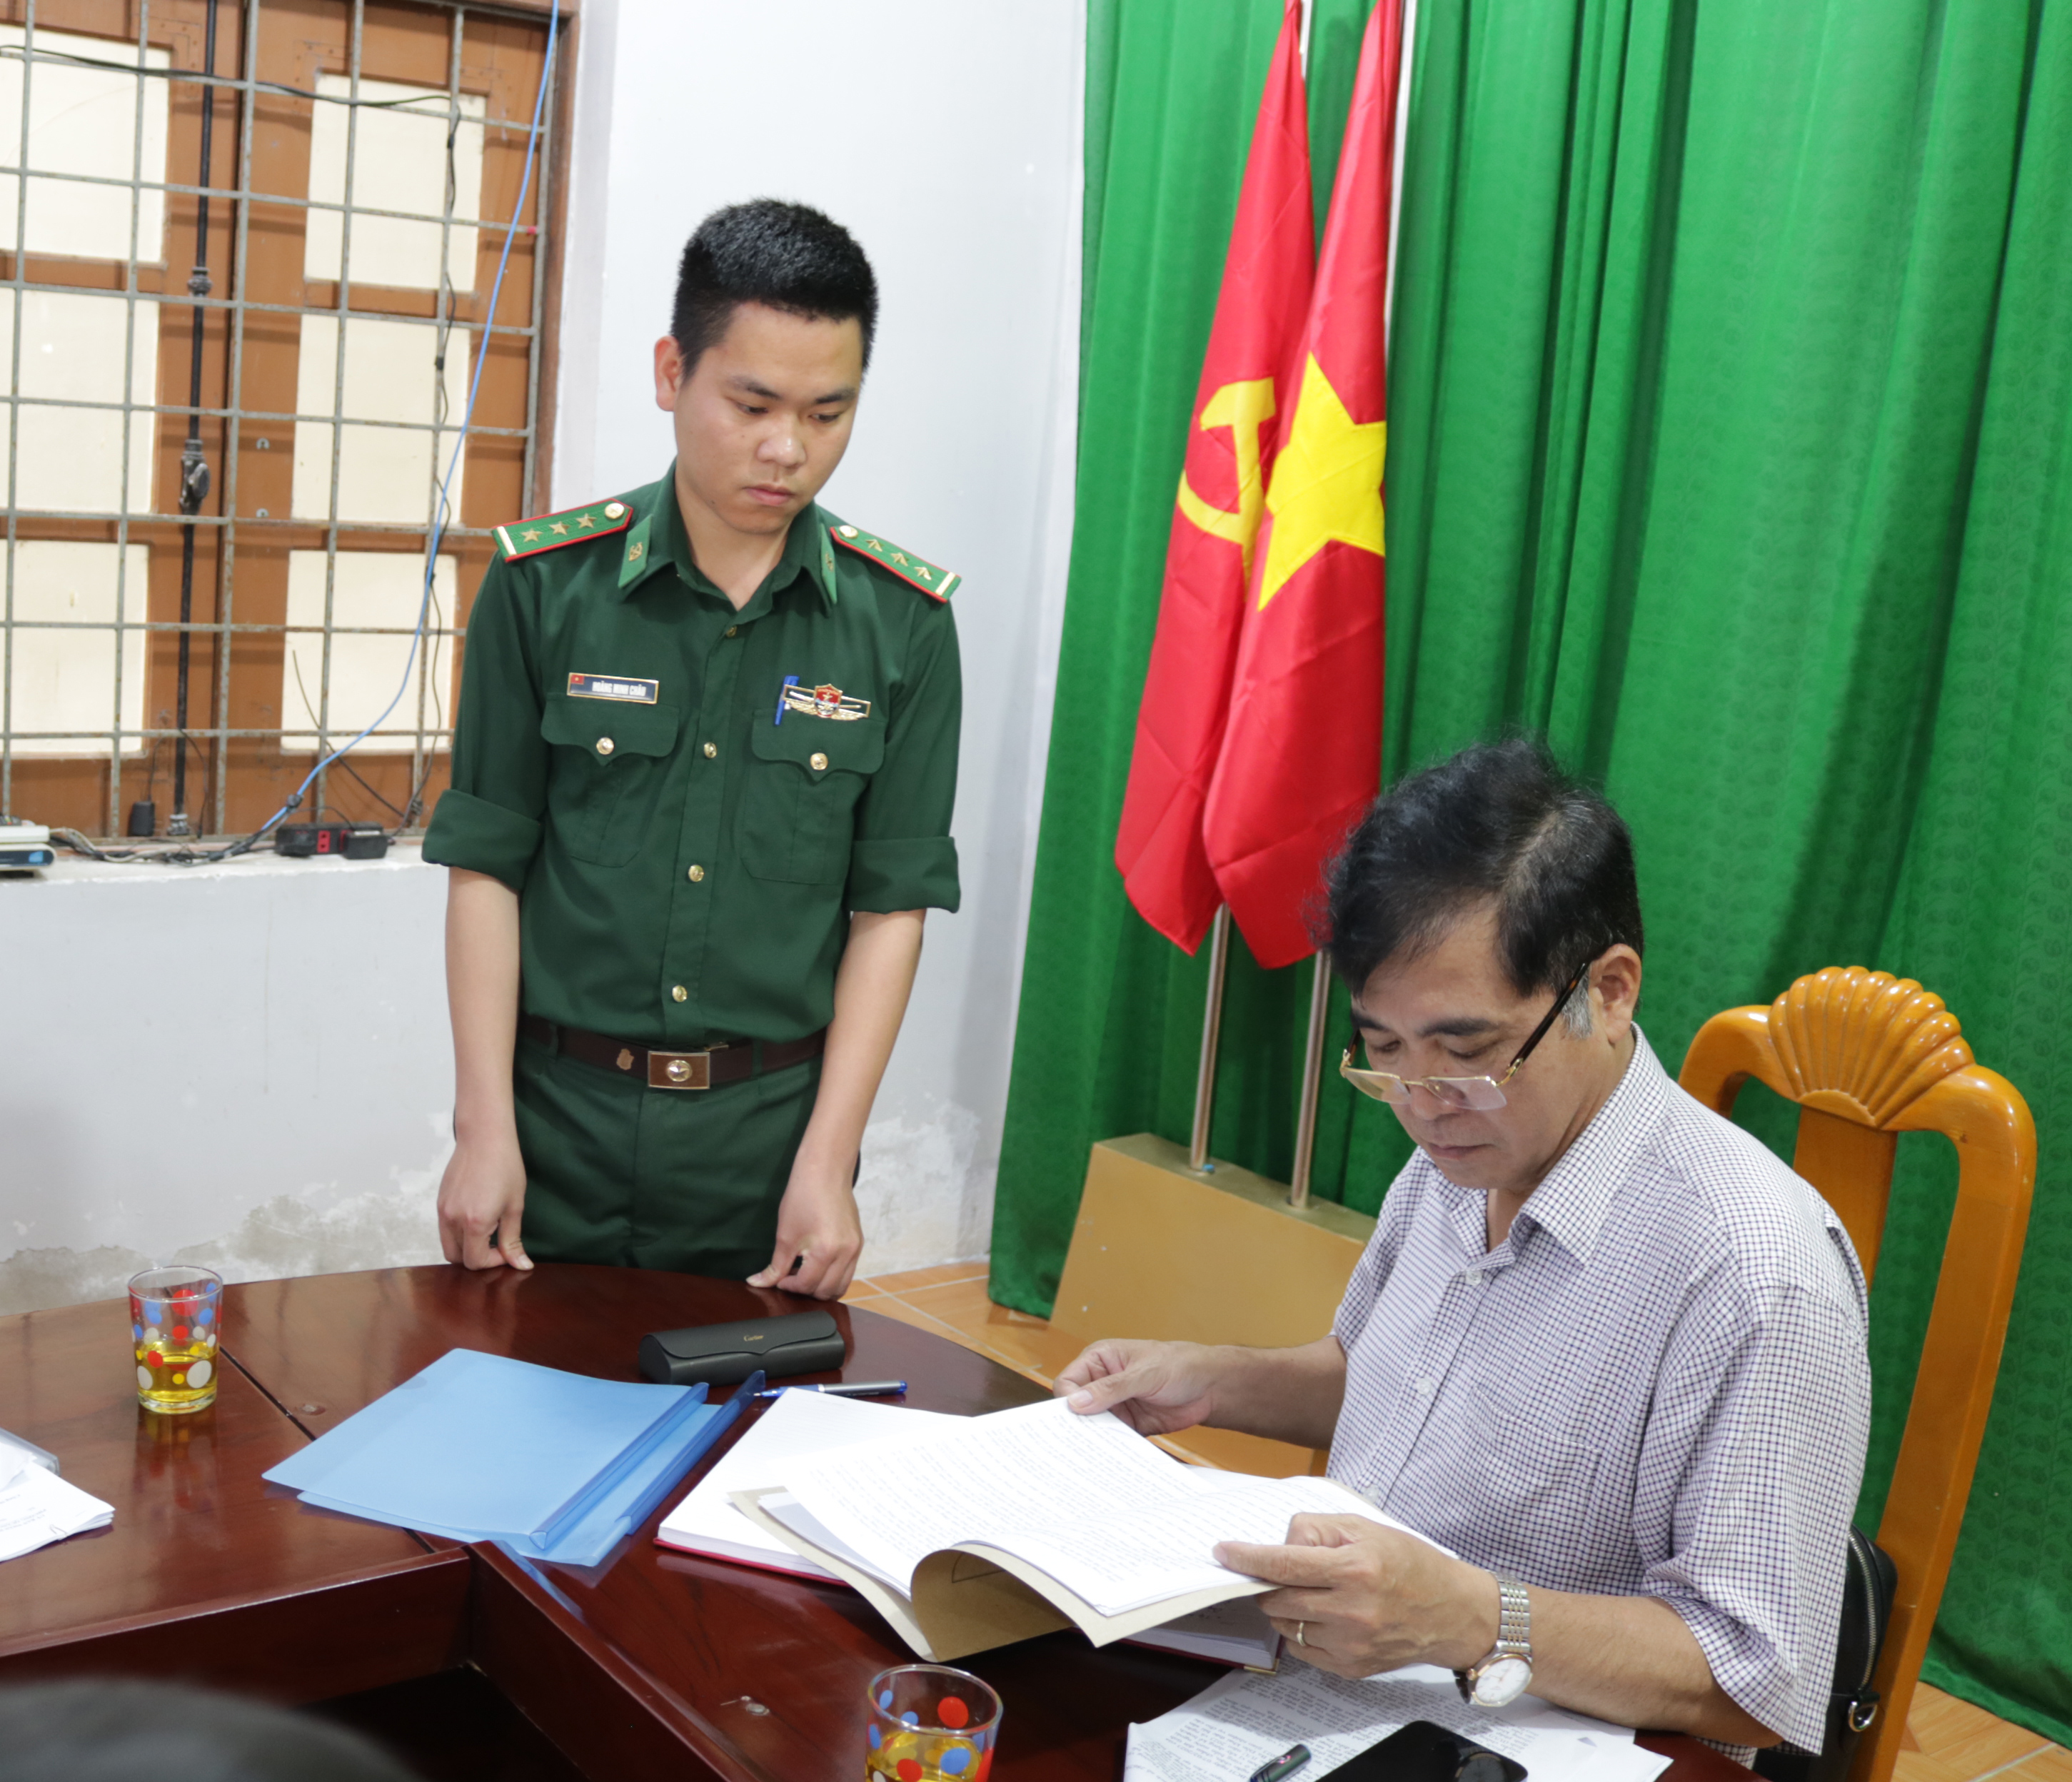 Phó Chủ tịch Thường trực UBND tỉnh Đoàn Ngọc Lâm kiểm tra việc thực hiện nhiệm vụ chống khai thác IUU tại trạm kiểm soát Biên phòng cửa Gianh (Đồn Biên phòng cửa khẩu cảng Gianh).